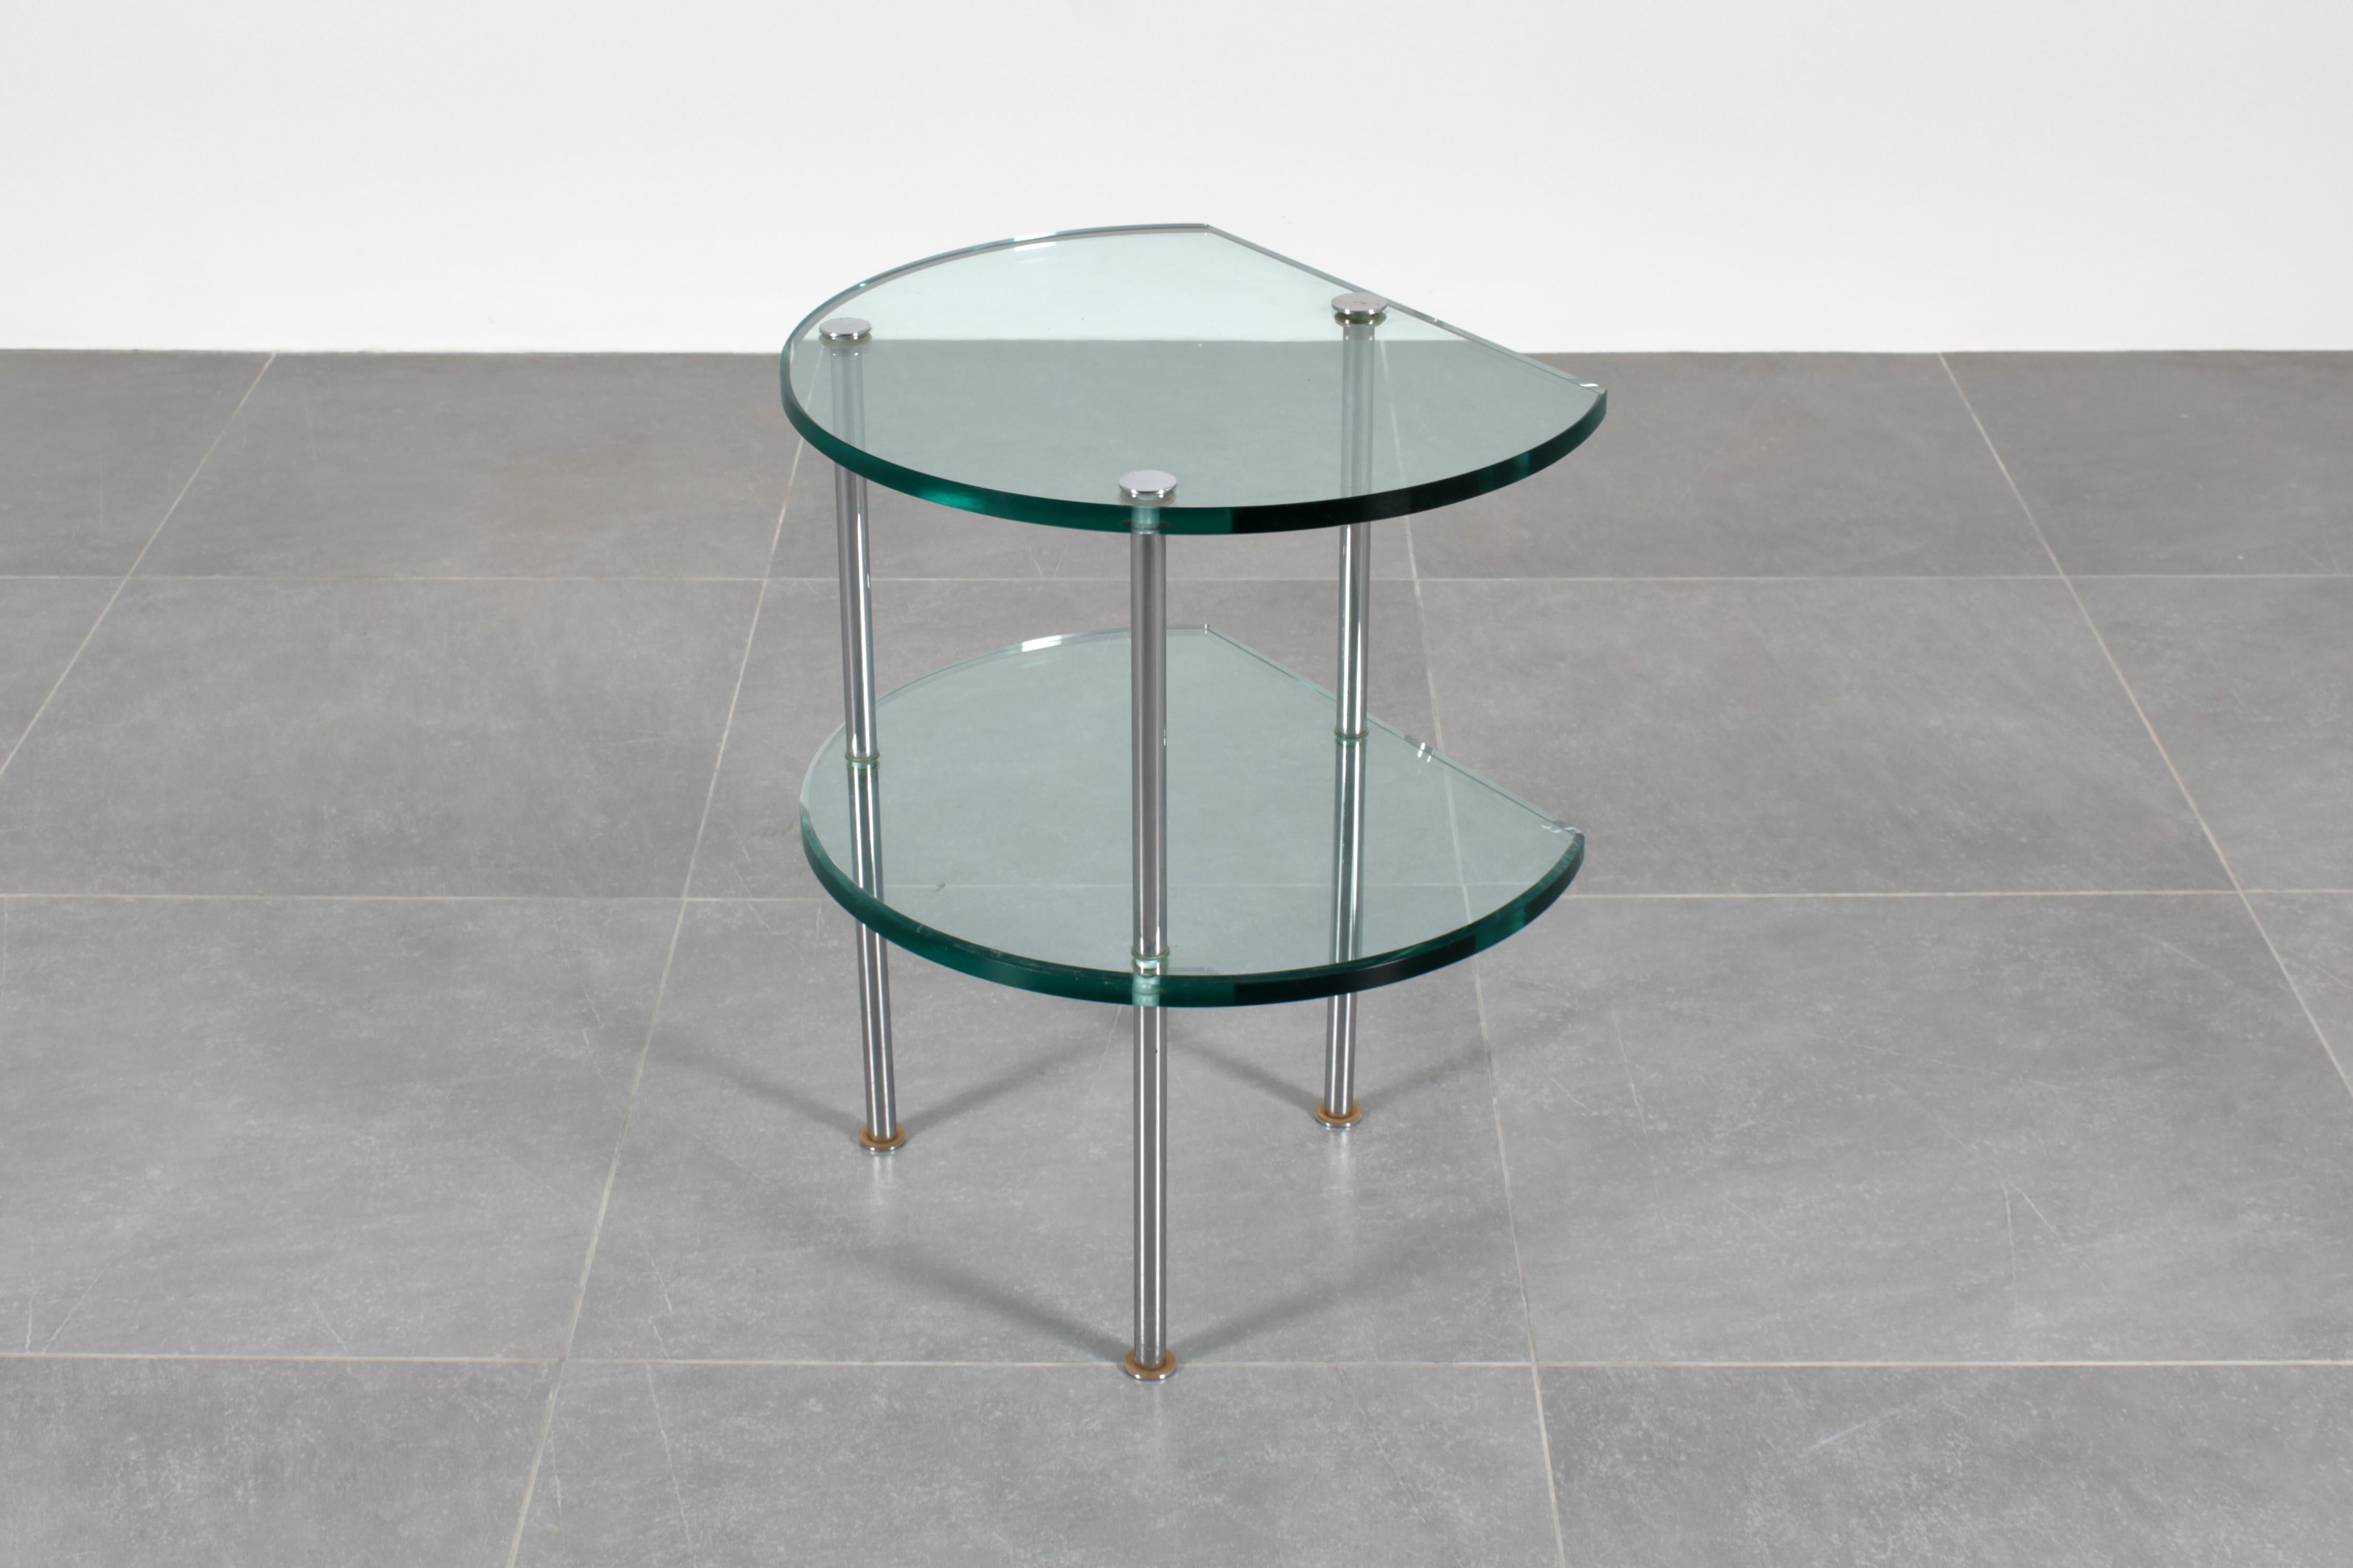 Table basse de style avec double plateau semi-circulaire en verre épais vert Nil avec trois pieds tubulaires en acier chromé. Dans le style de Gallotti & Radice, création italienne des années 60.
Usure conforme à l'âge et à l'utilisation.